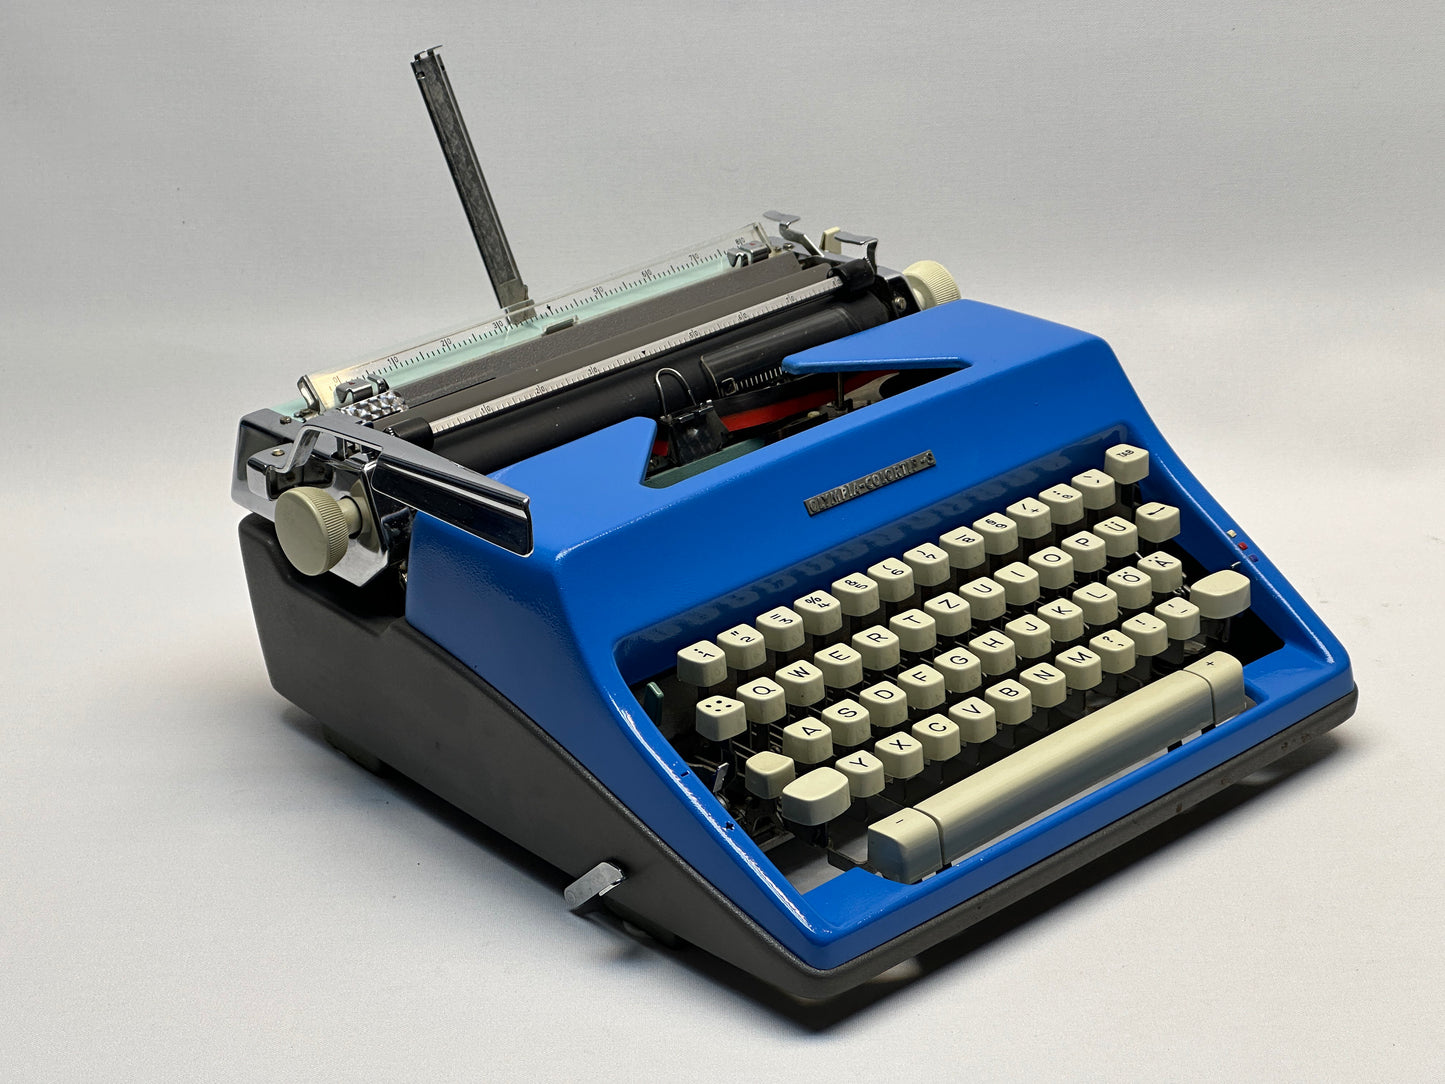 Blue Olympia Monica Typewriter - QWERTZ Keyboard, White Keyboard, Blue Typewriter with Wood Bag